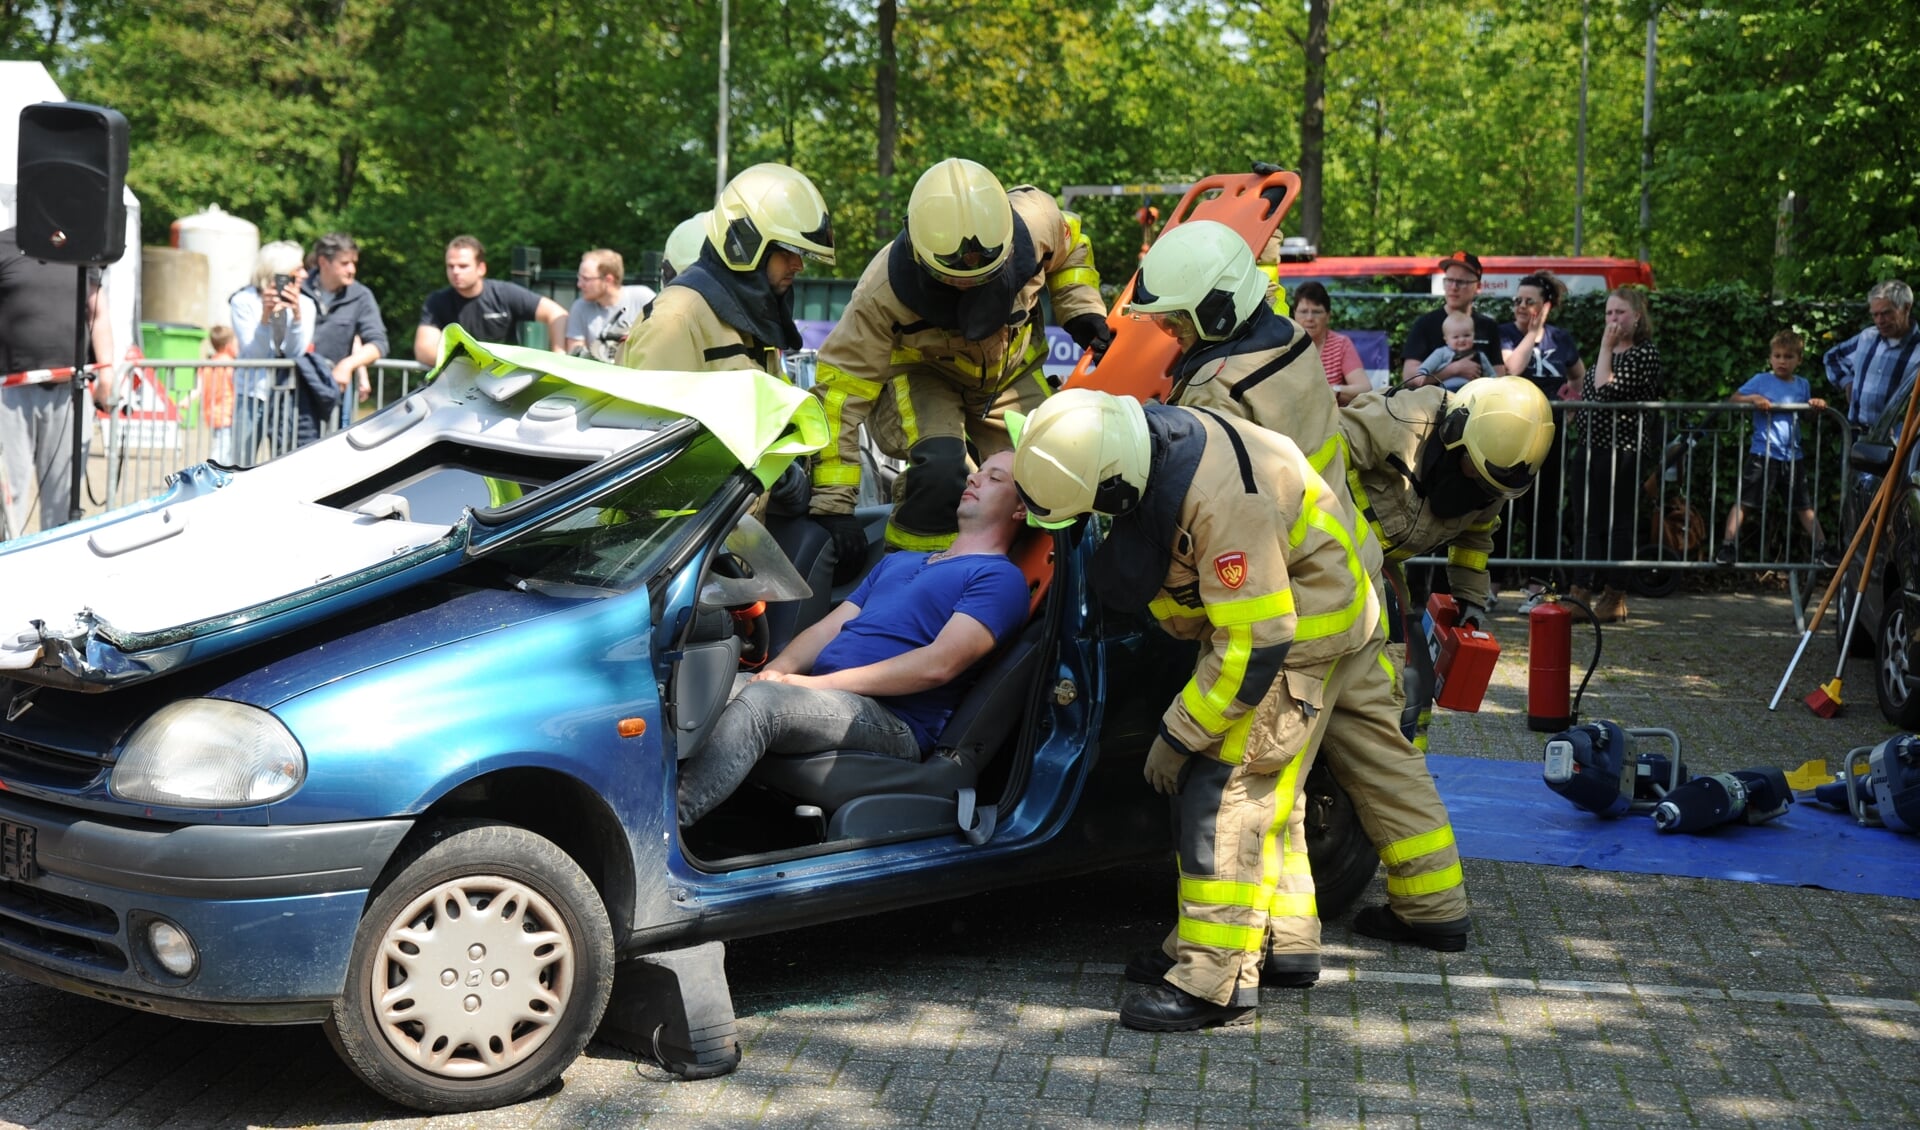 Vakkundig lieten de brandweermannen zien hoe een gewonde automobilist uit zijn auto werd bevrijd. Foto: Achterhoekfoto.nl/Paul Harmelink. 